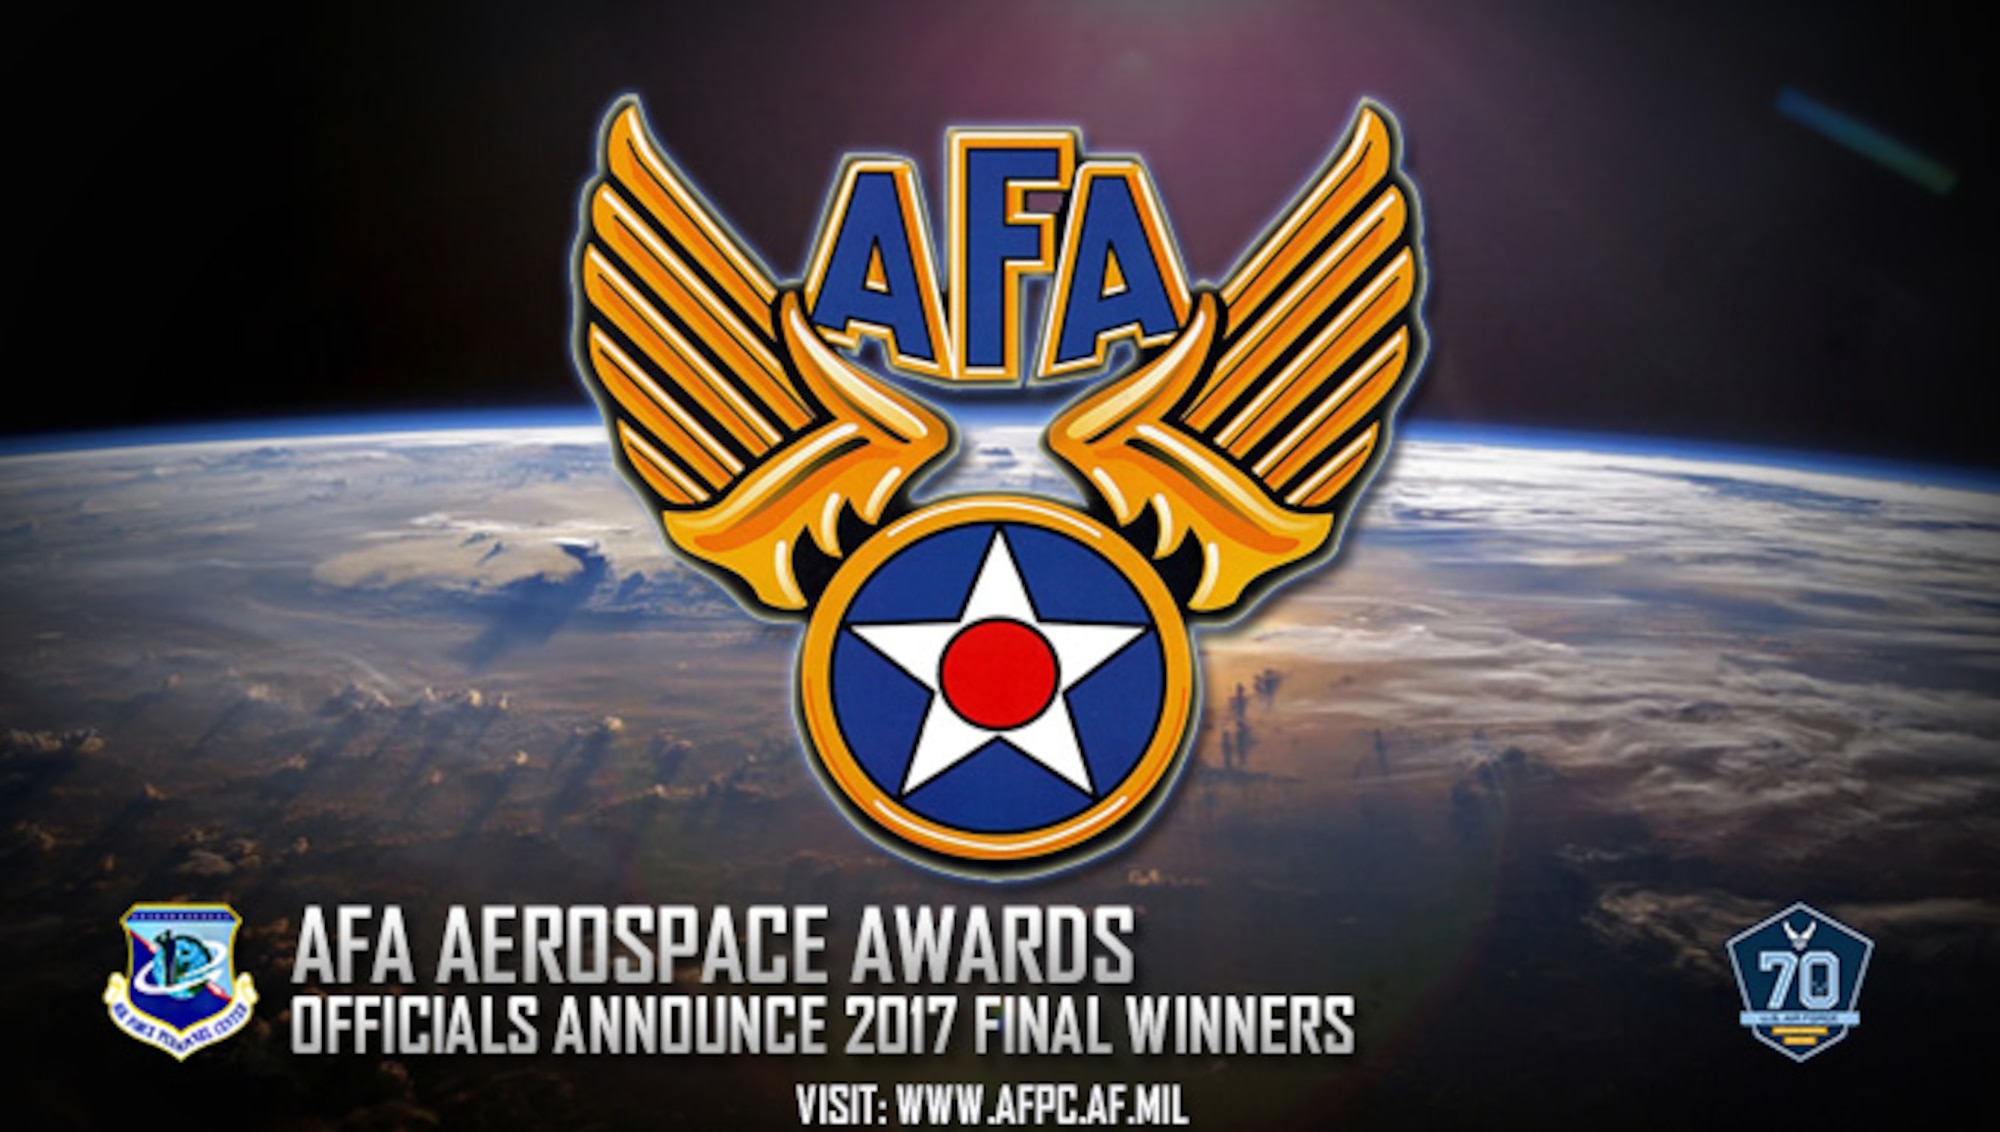 AFA Aerospace Awards; officials announce 2017 final winners